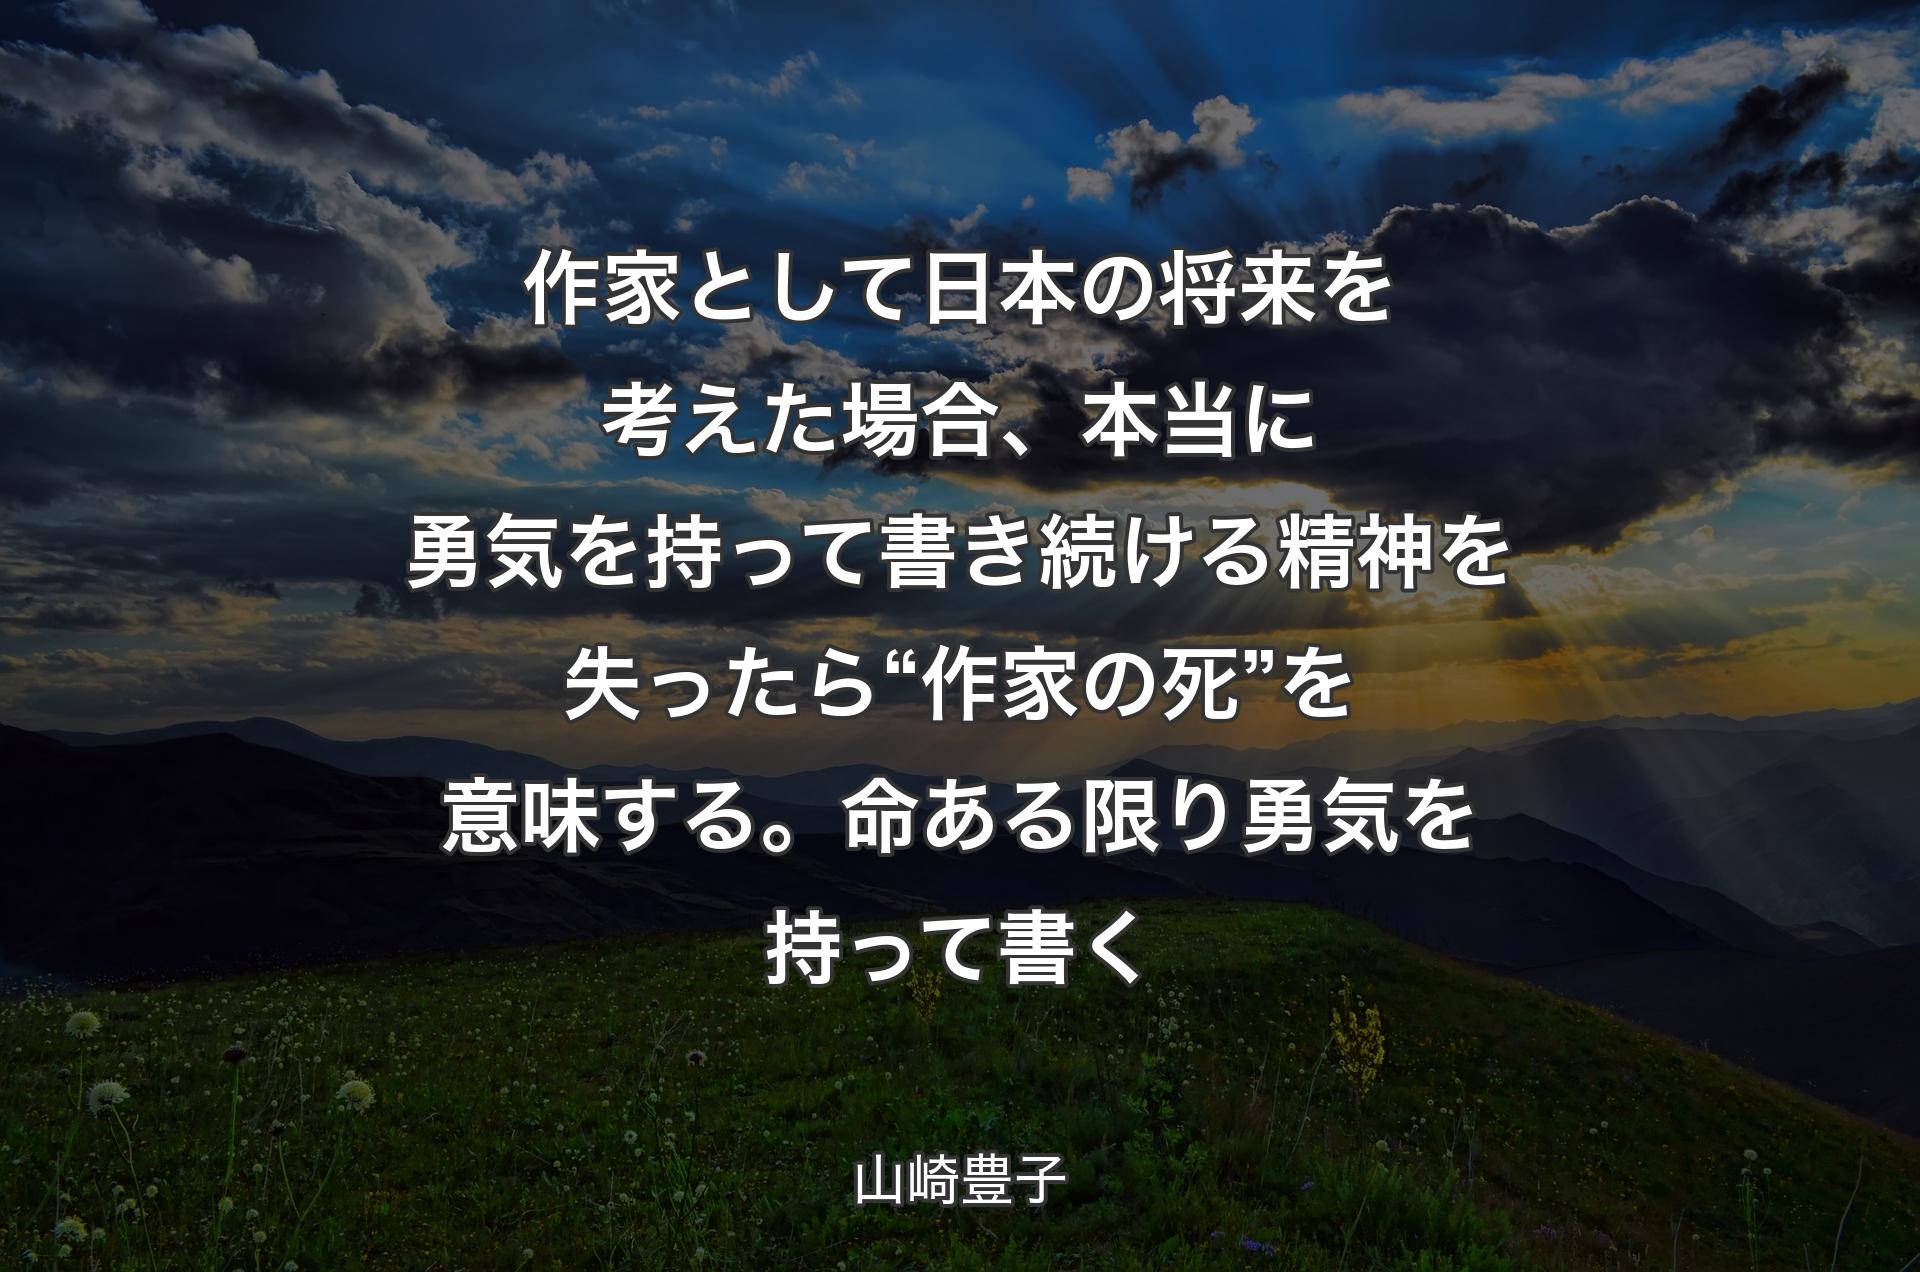 作家として日本の将来を考えた場合、本当に勇気を持って書き続ける精神を失ったら“ 作家の死”を意味する。命ある限り勇気を持って書く - 山崎豊子